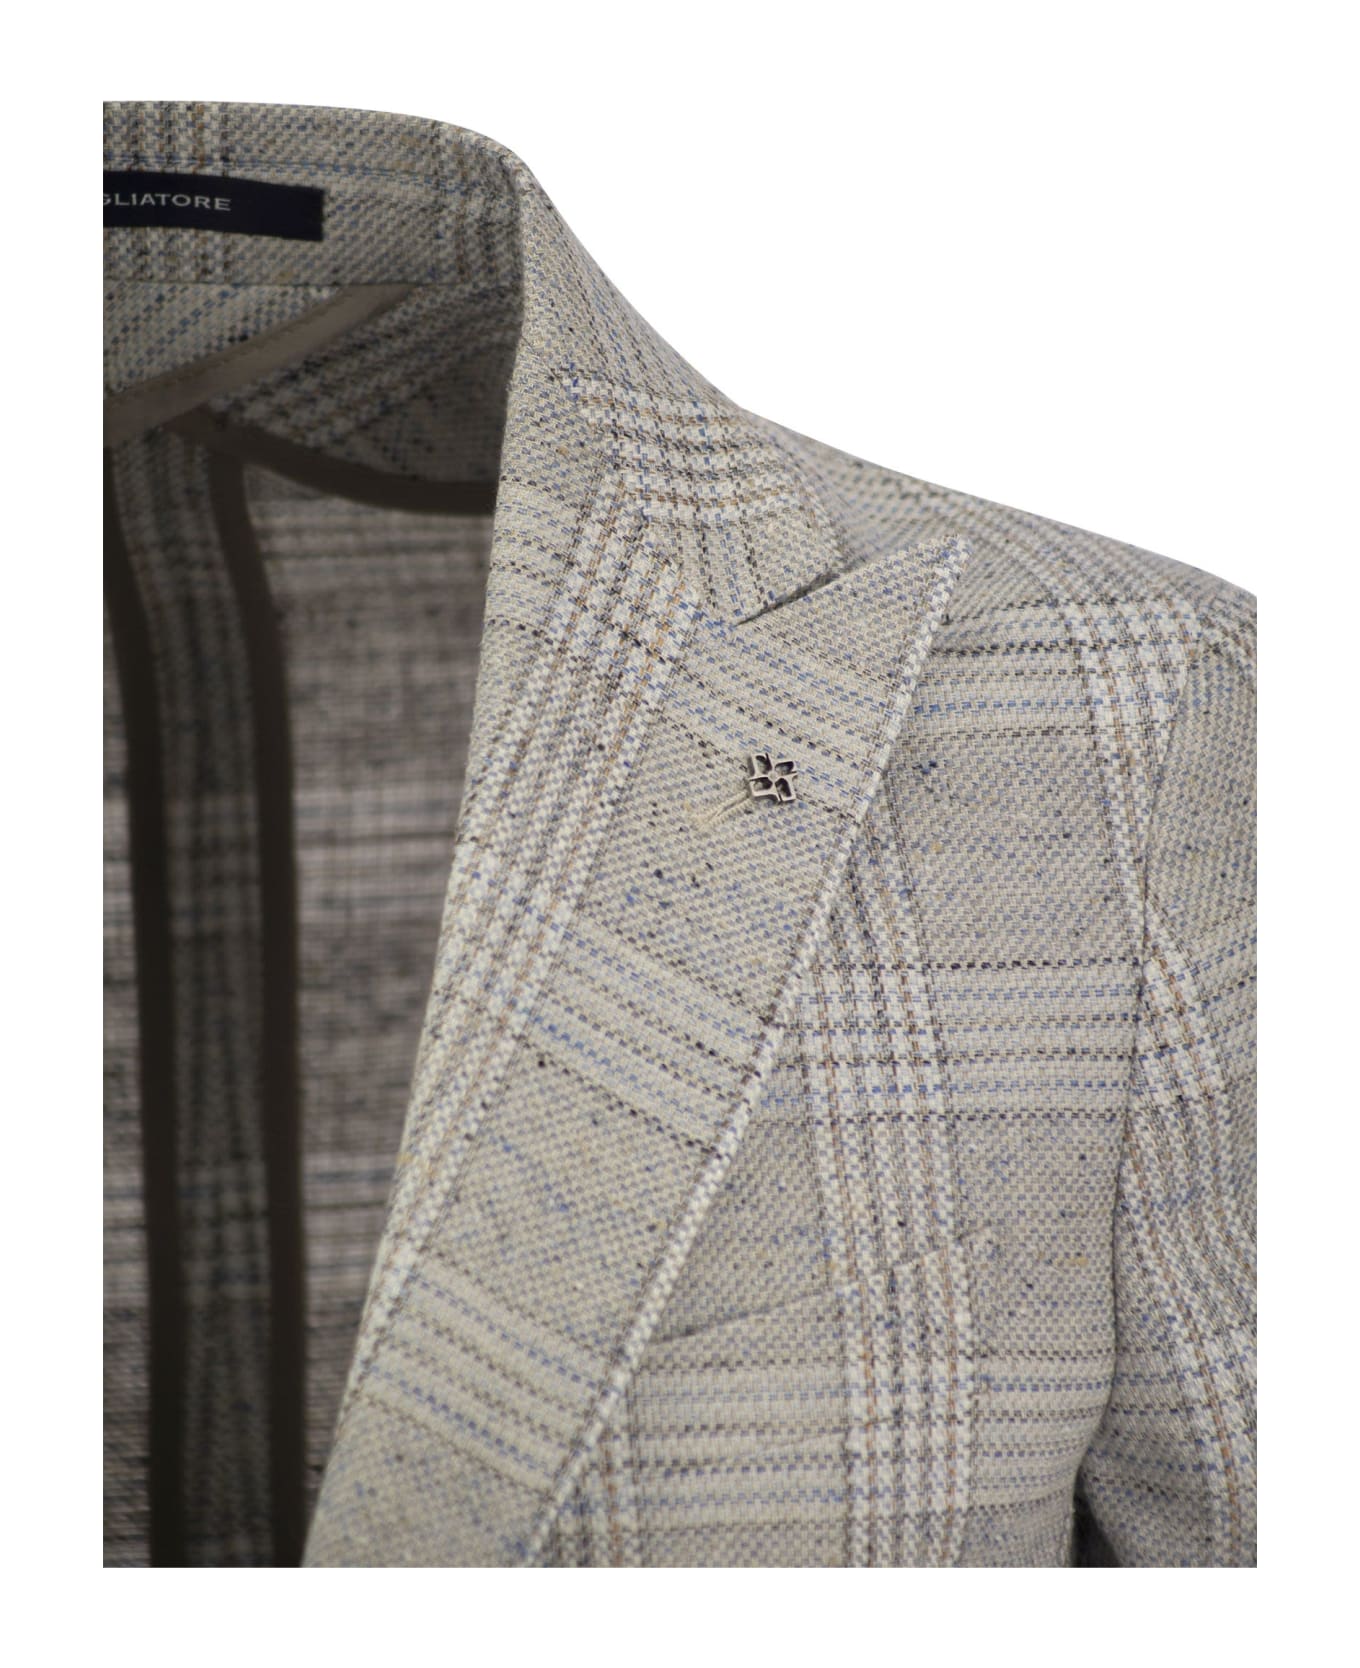 Tagliatore Jacket With Tartan Pattern - Grey スーツ